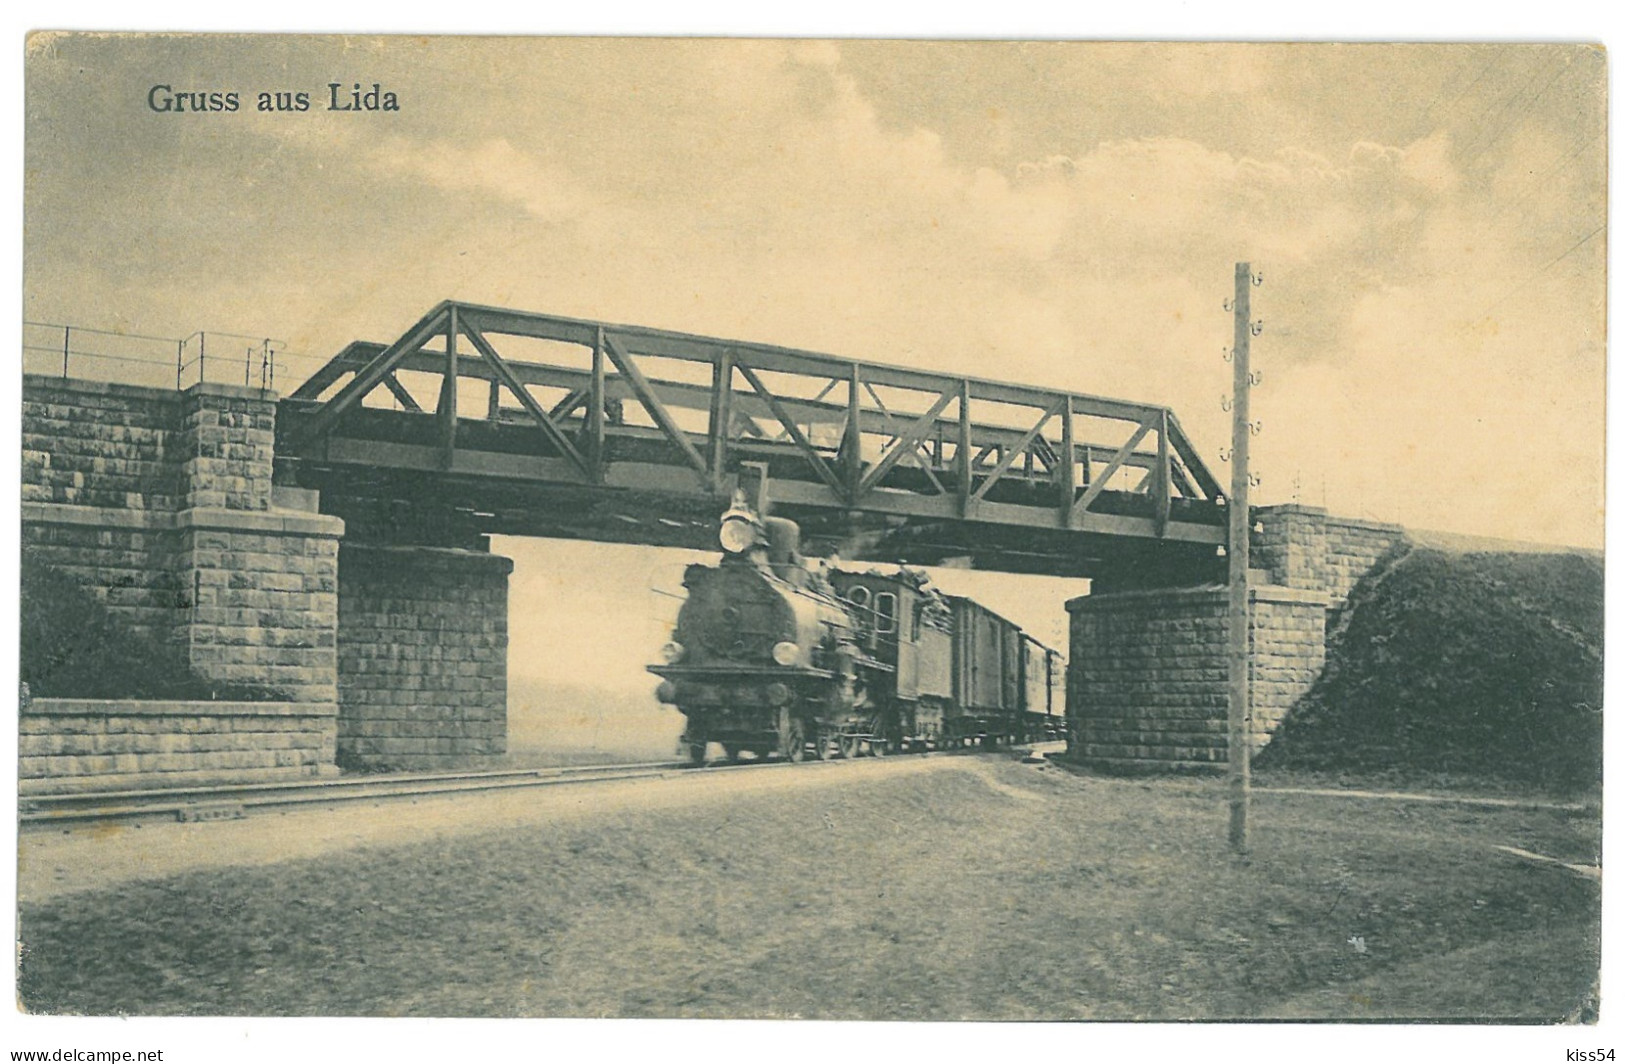 BL 26 - 24503 LIDA, Bridge & Train, Belarus - Old Postcard - Used - 1917 - Belarus